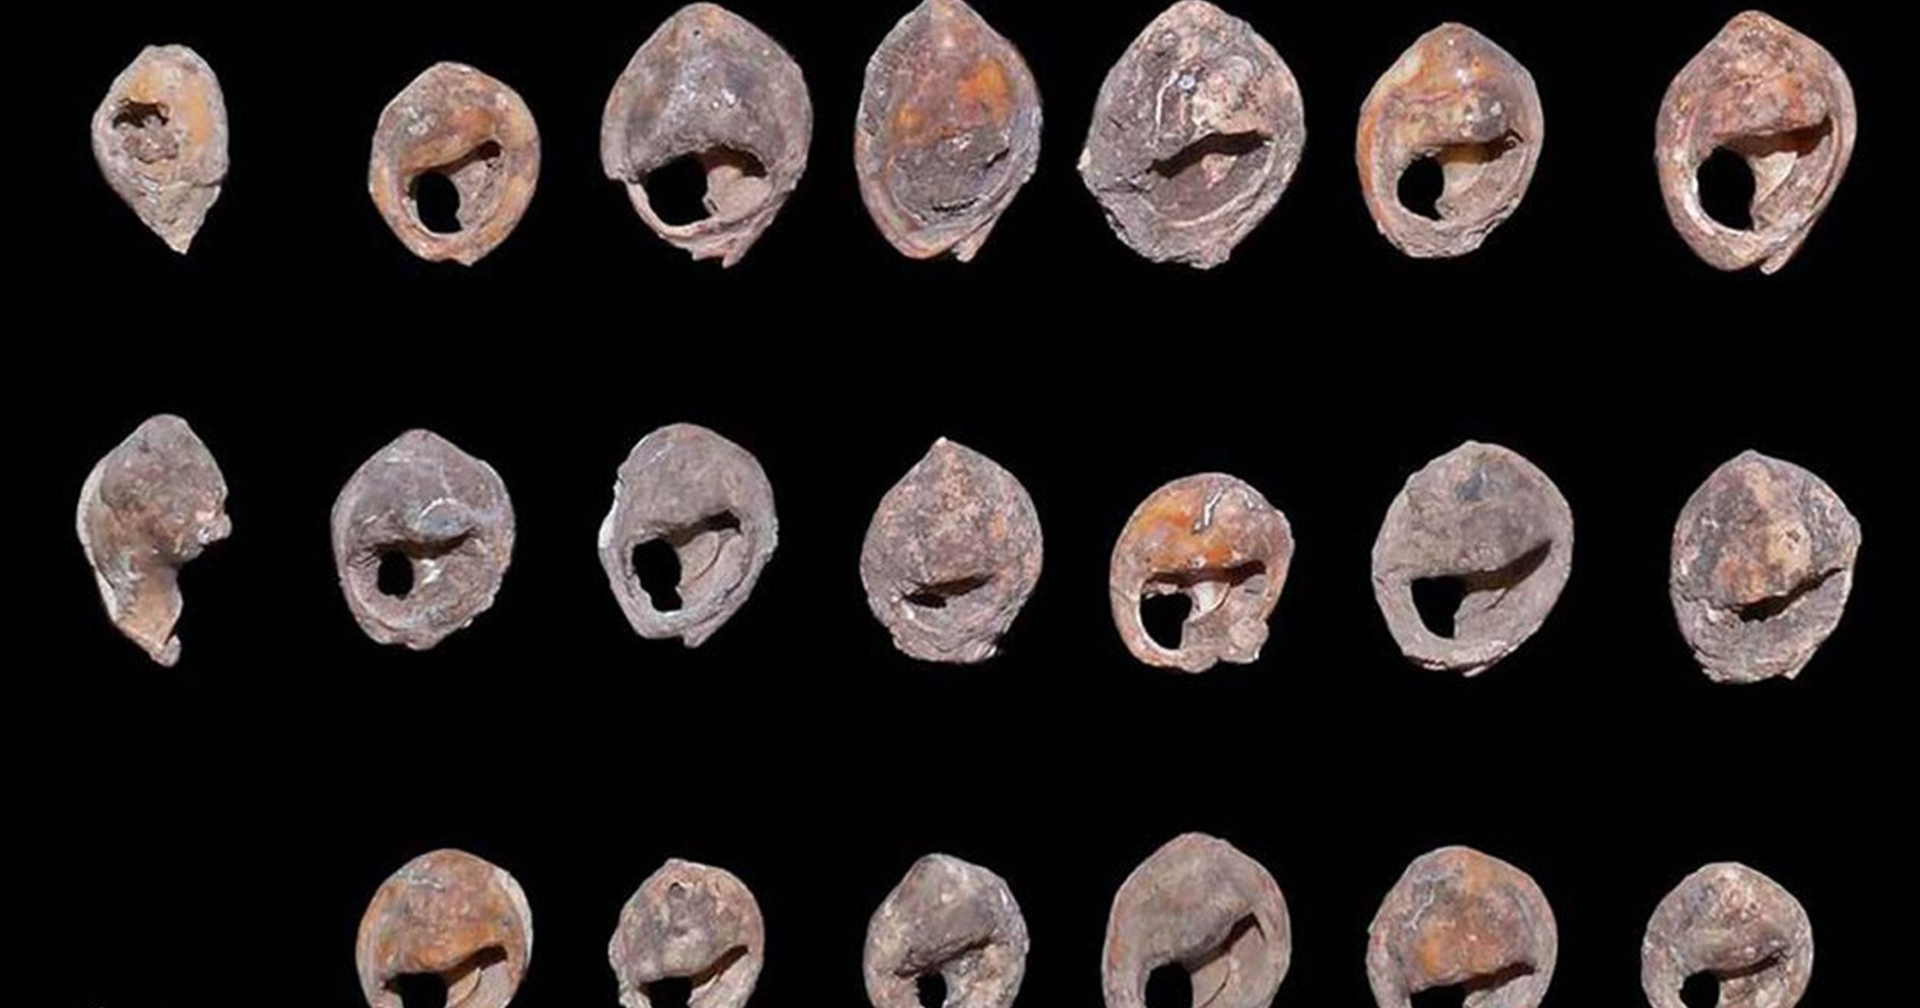 นักโบราณคดีพบเครื่องประดับยุคหิน ที่อาจเก่าแก่ที่สุดในโลกอายุเกือบ 150,000 ปี